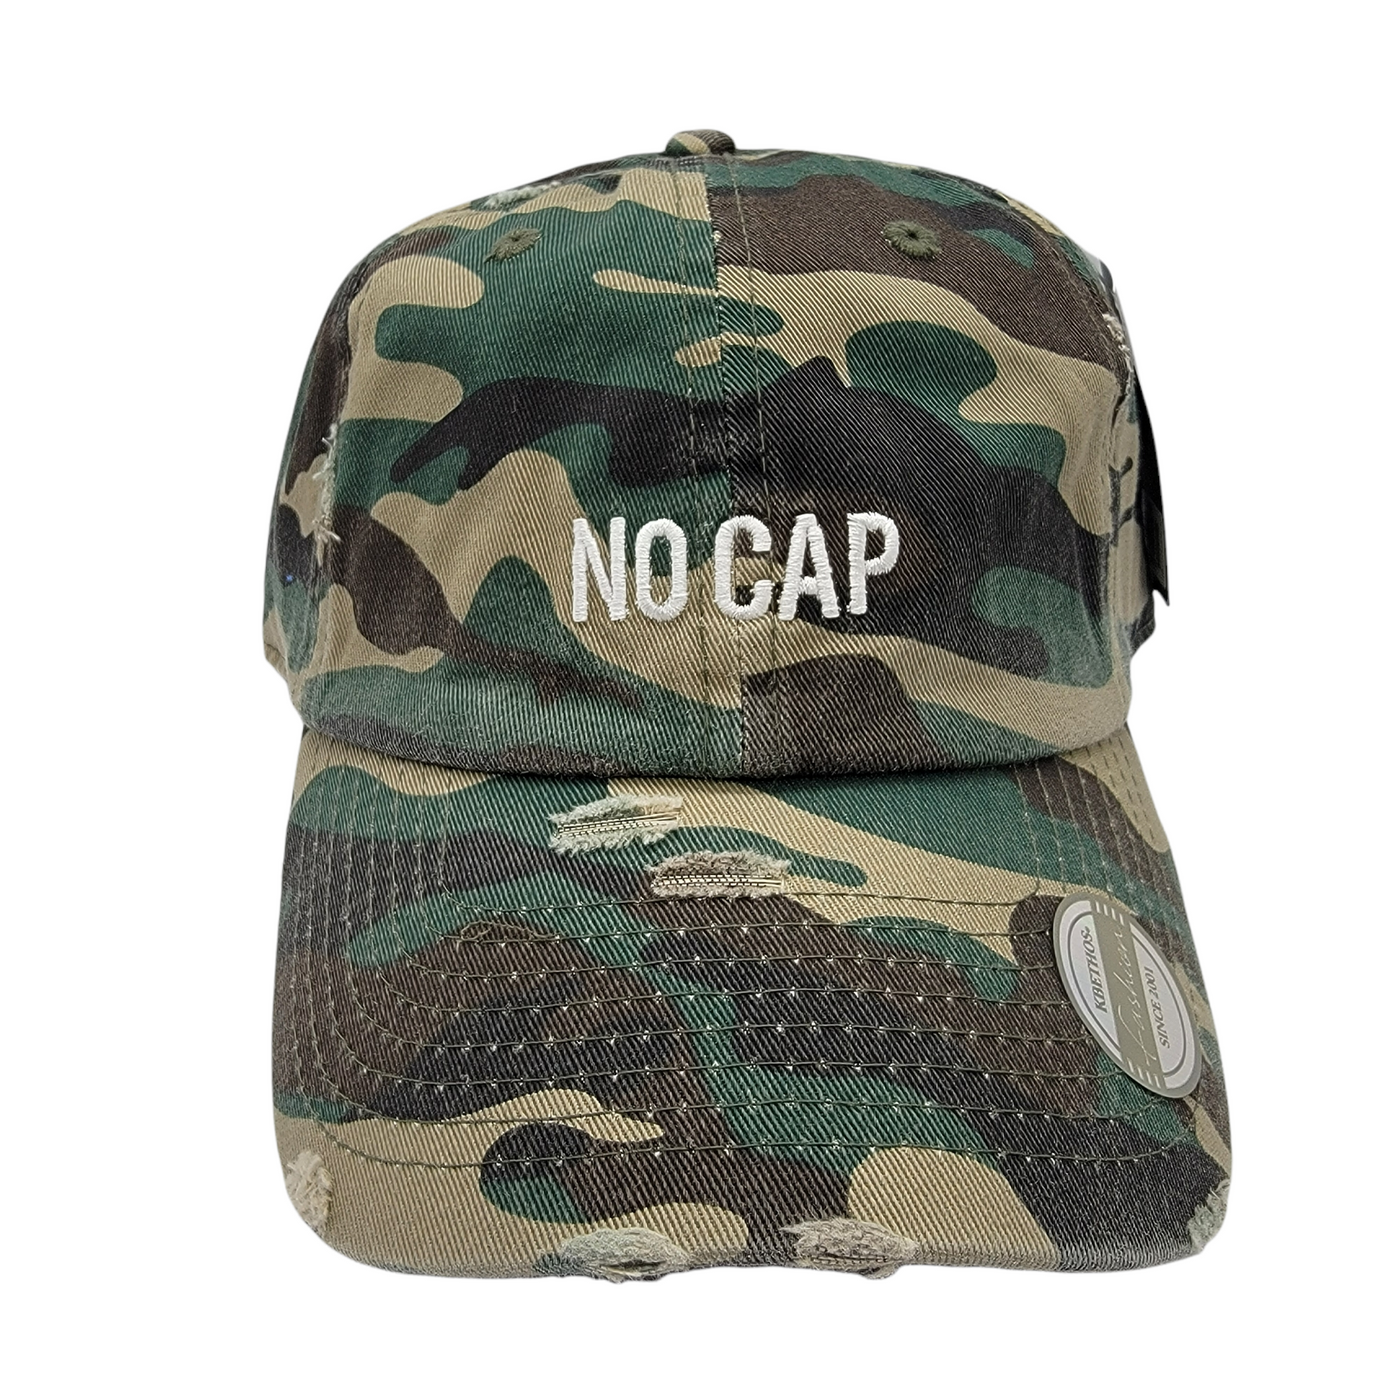 No Cap Vintage Dad Hat